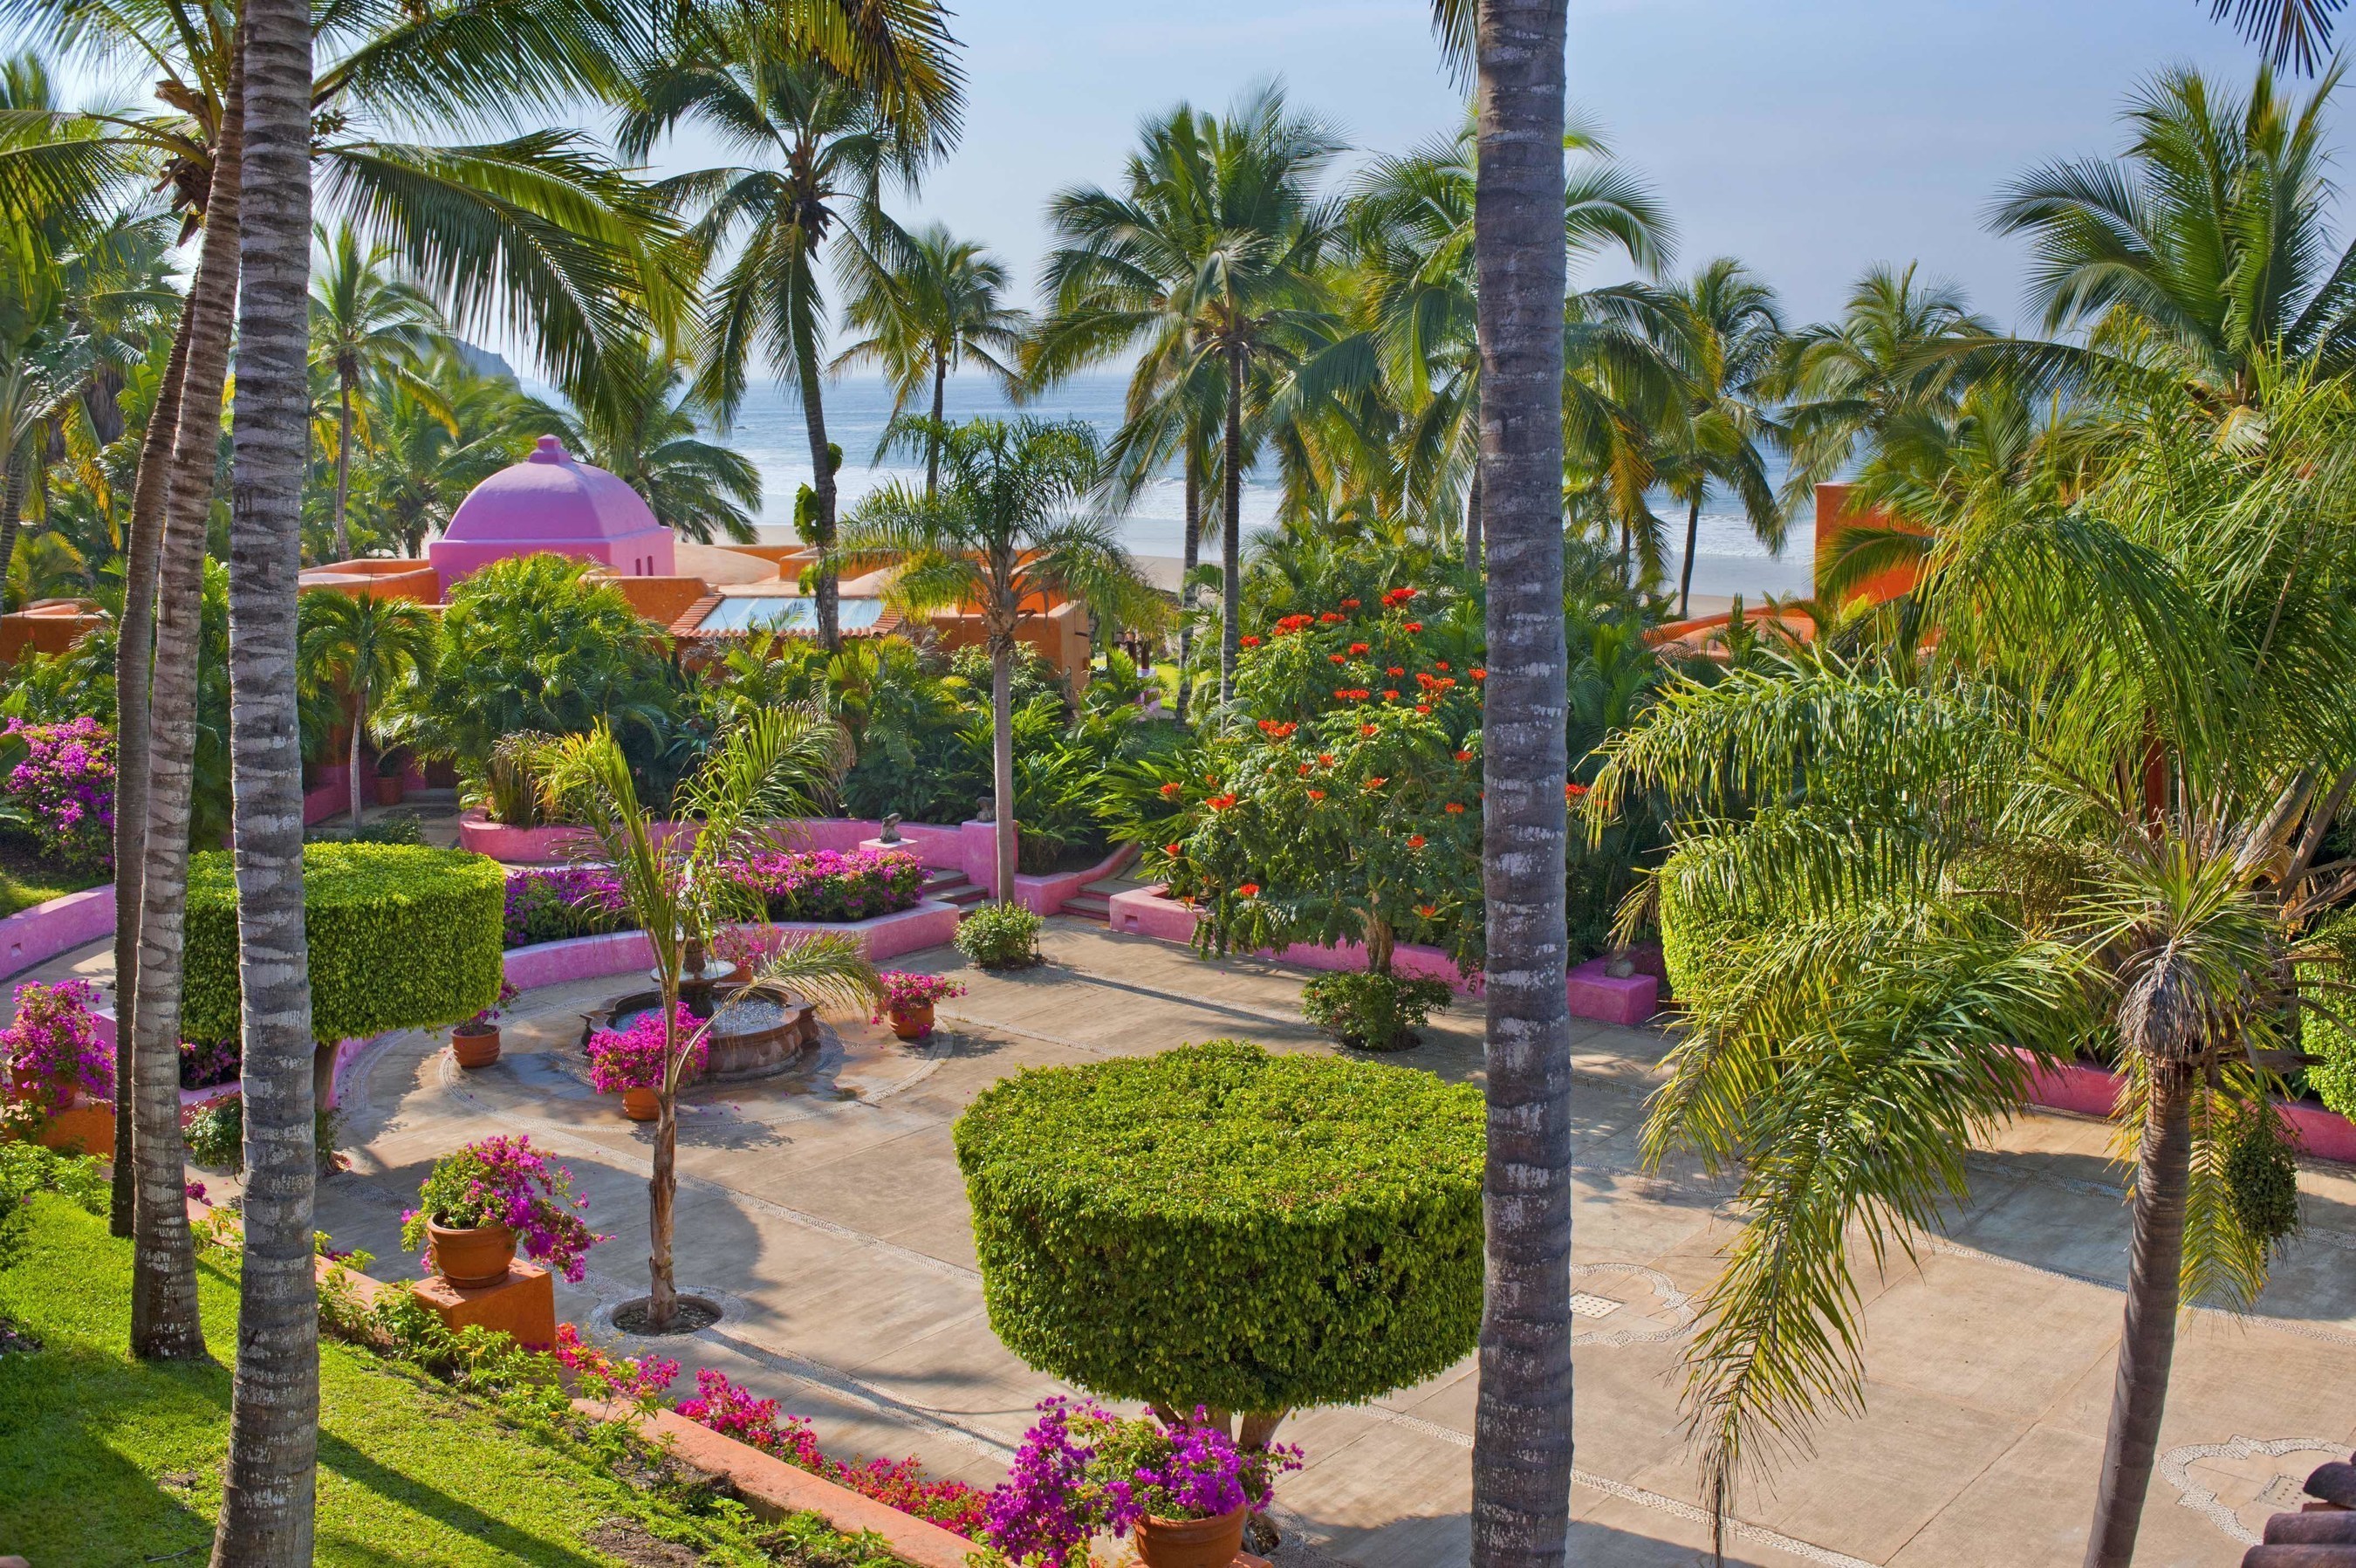 The fountains and lush gardens of Plaza De Los Delfines at Las Alamandas Resort.